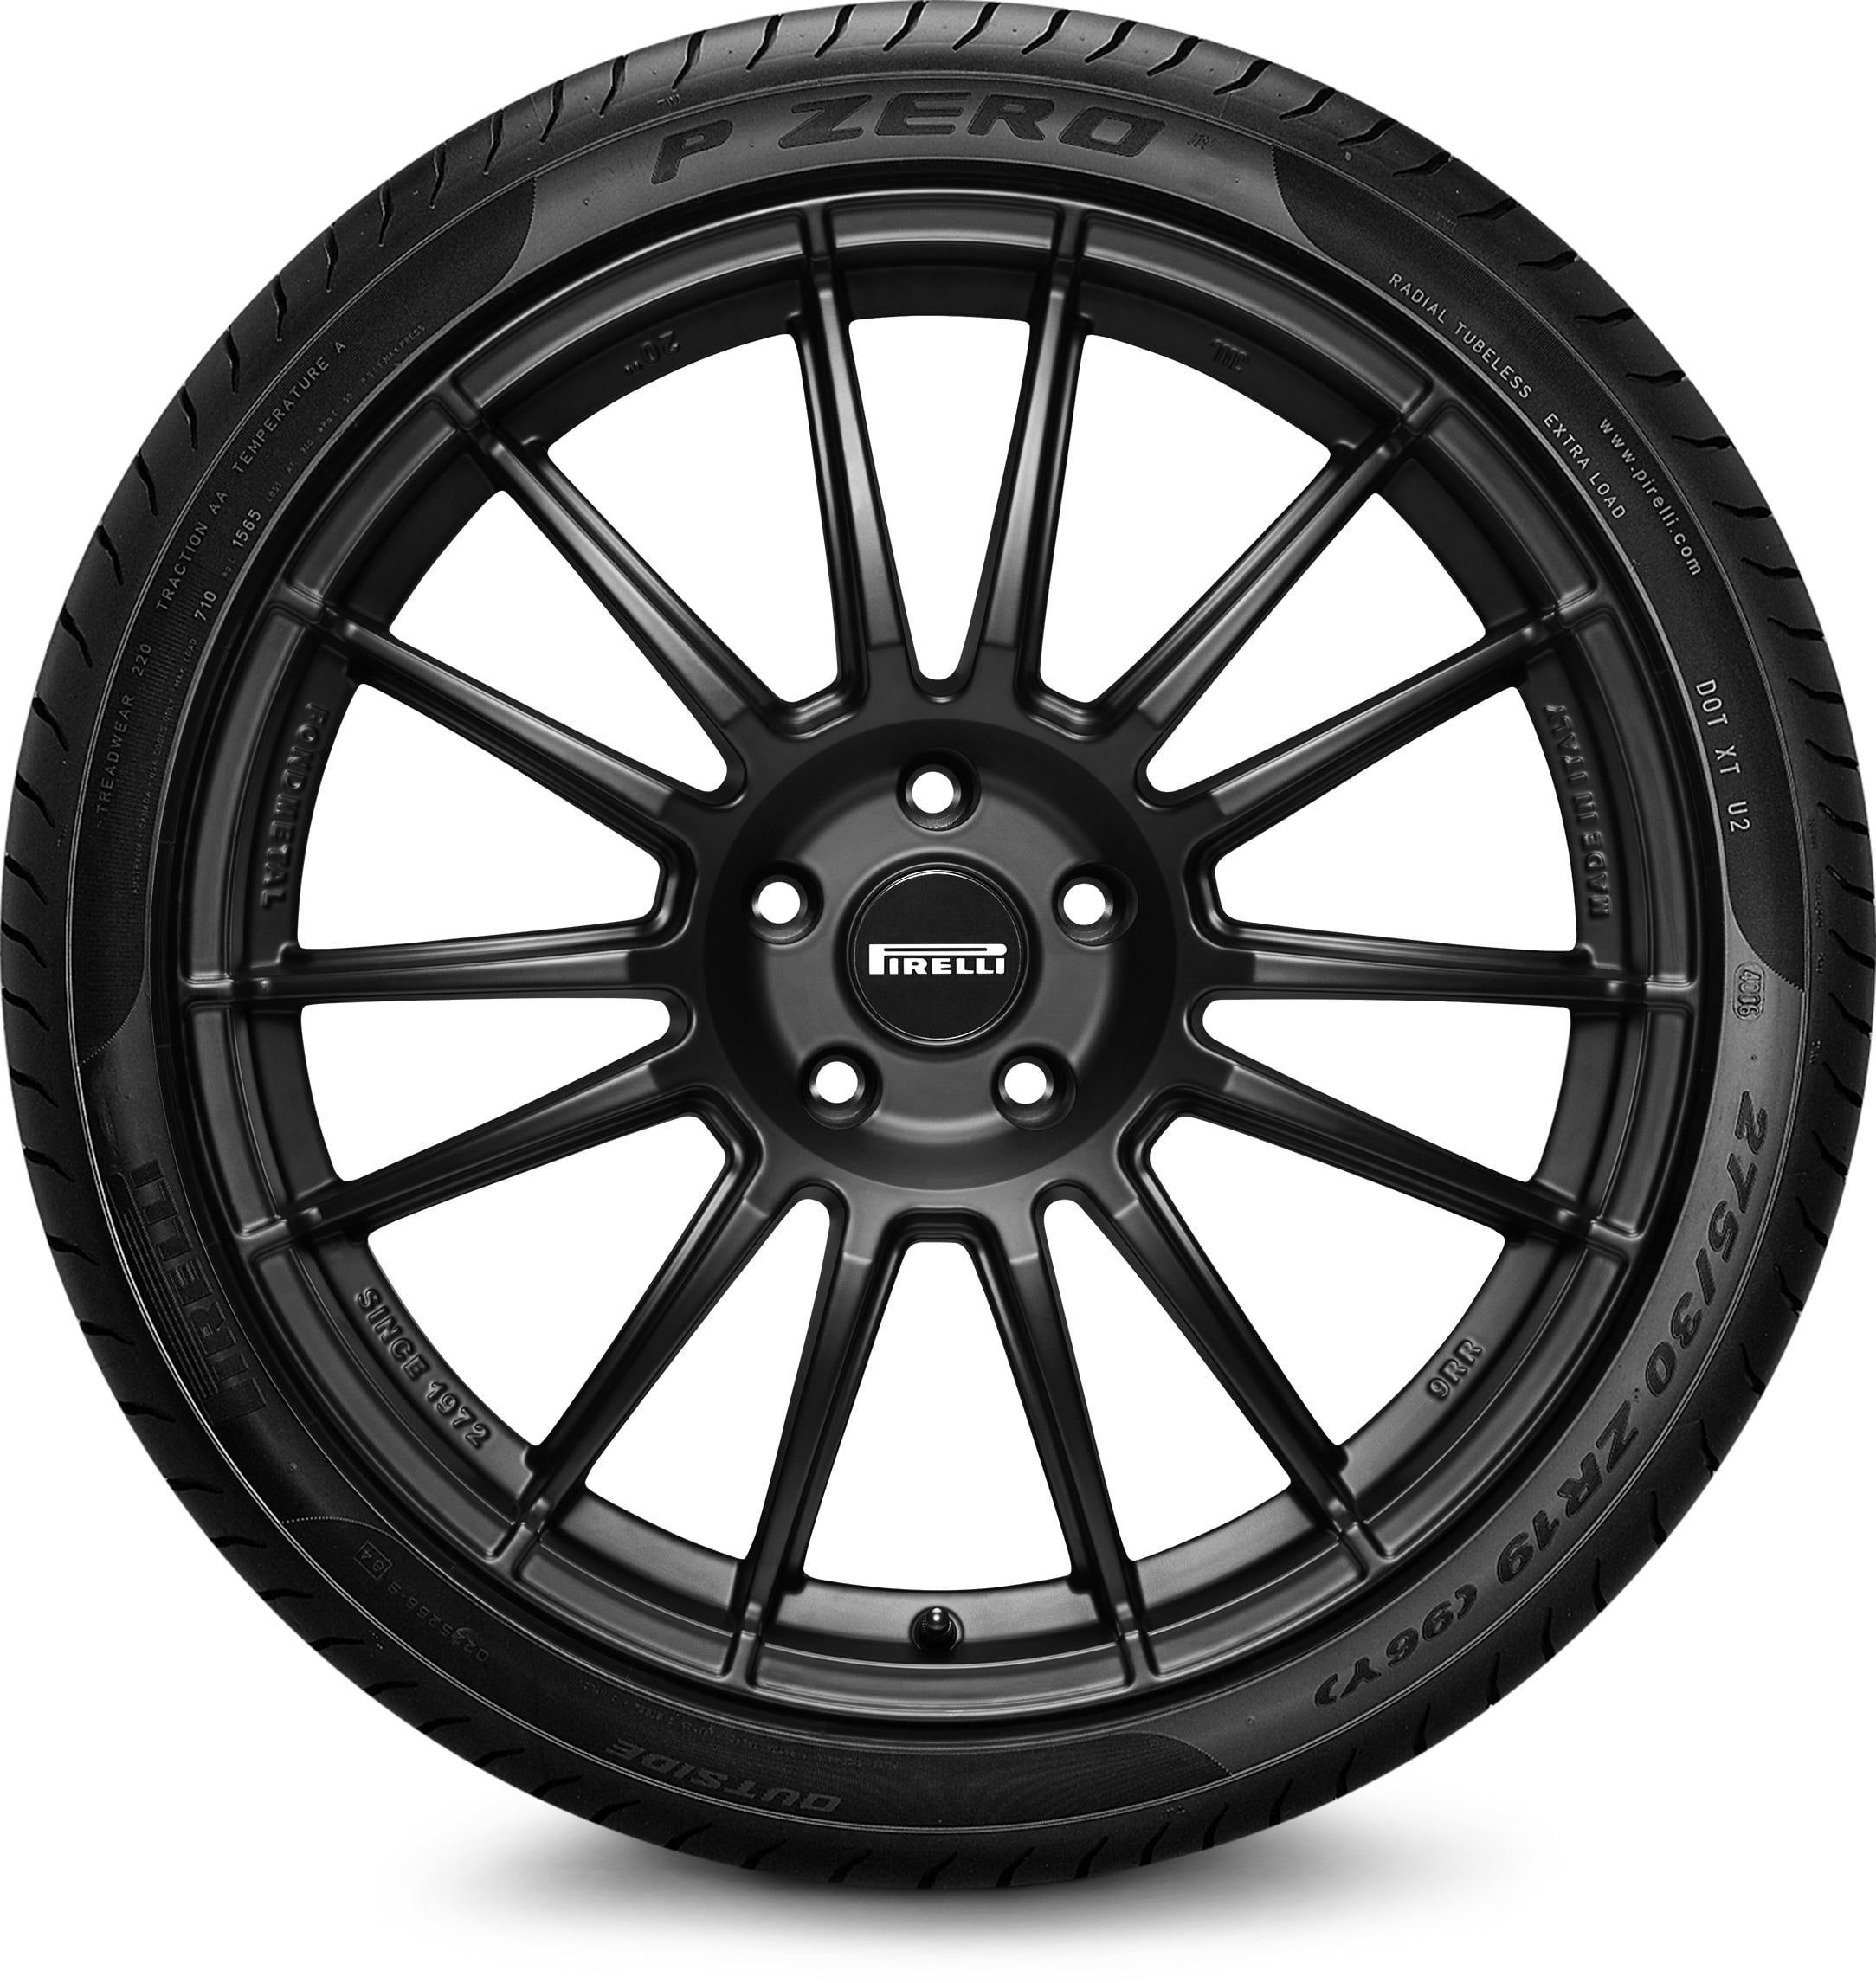 Pirelli P Zero 285/40R22 110 Y Tire